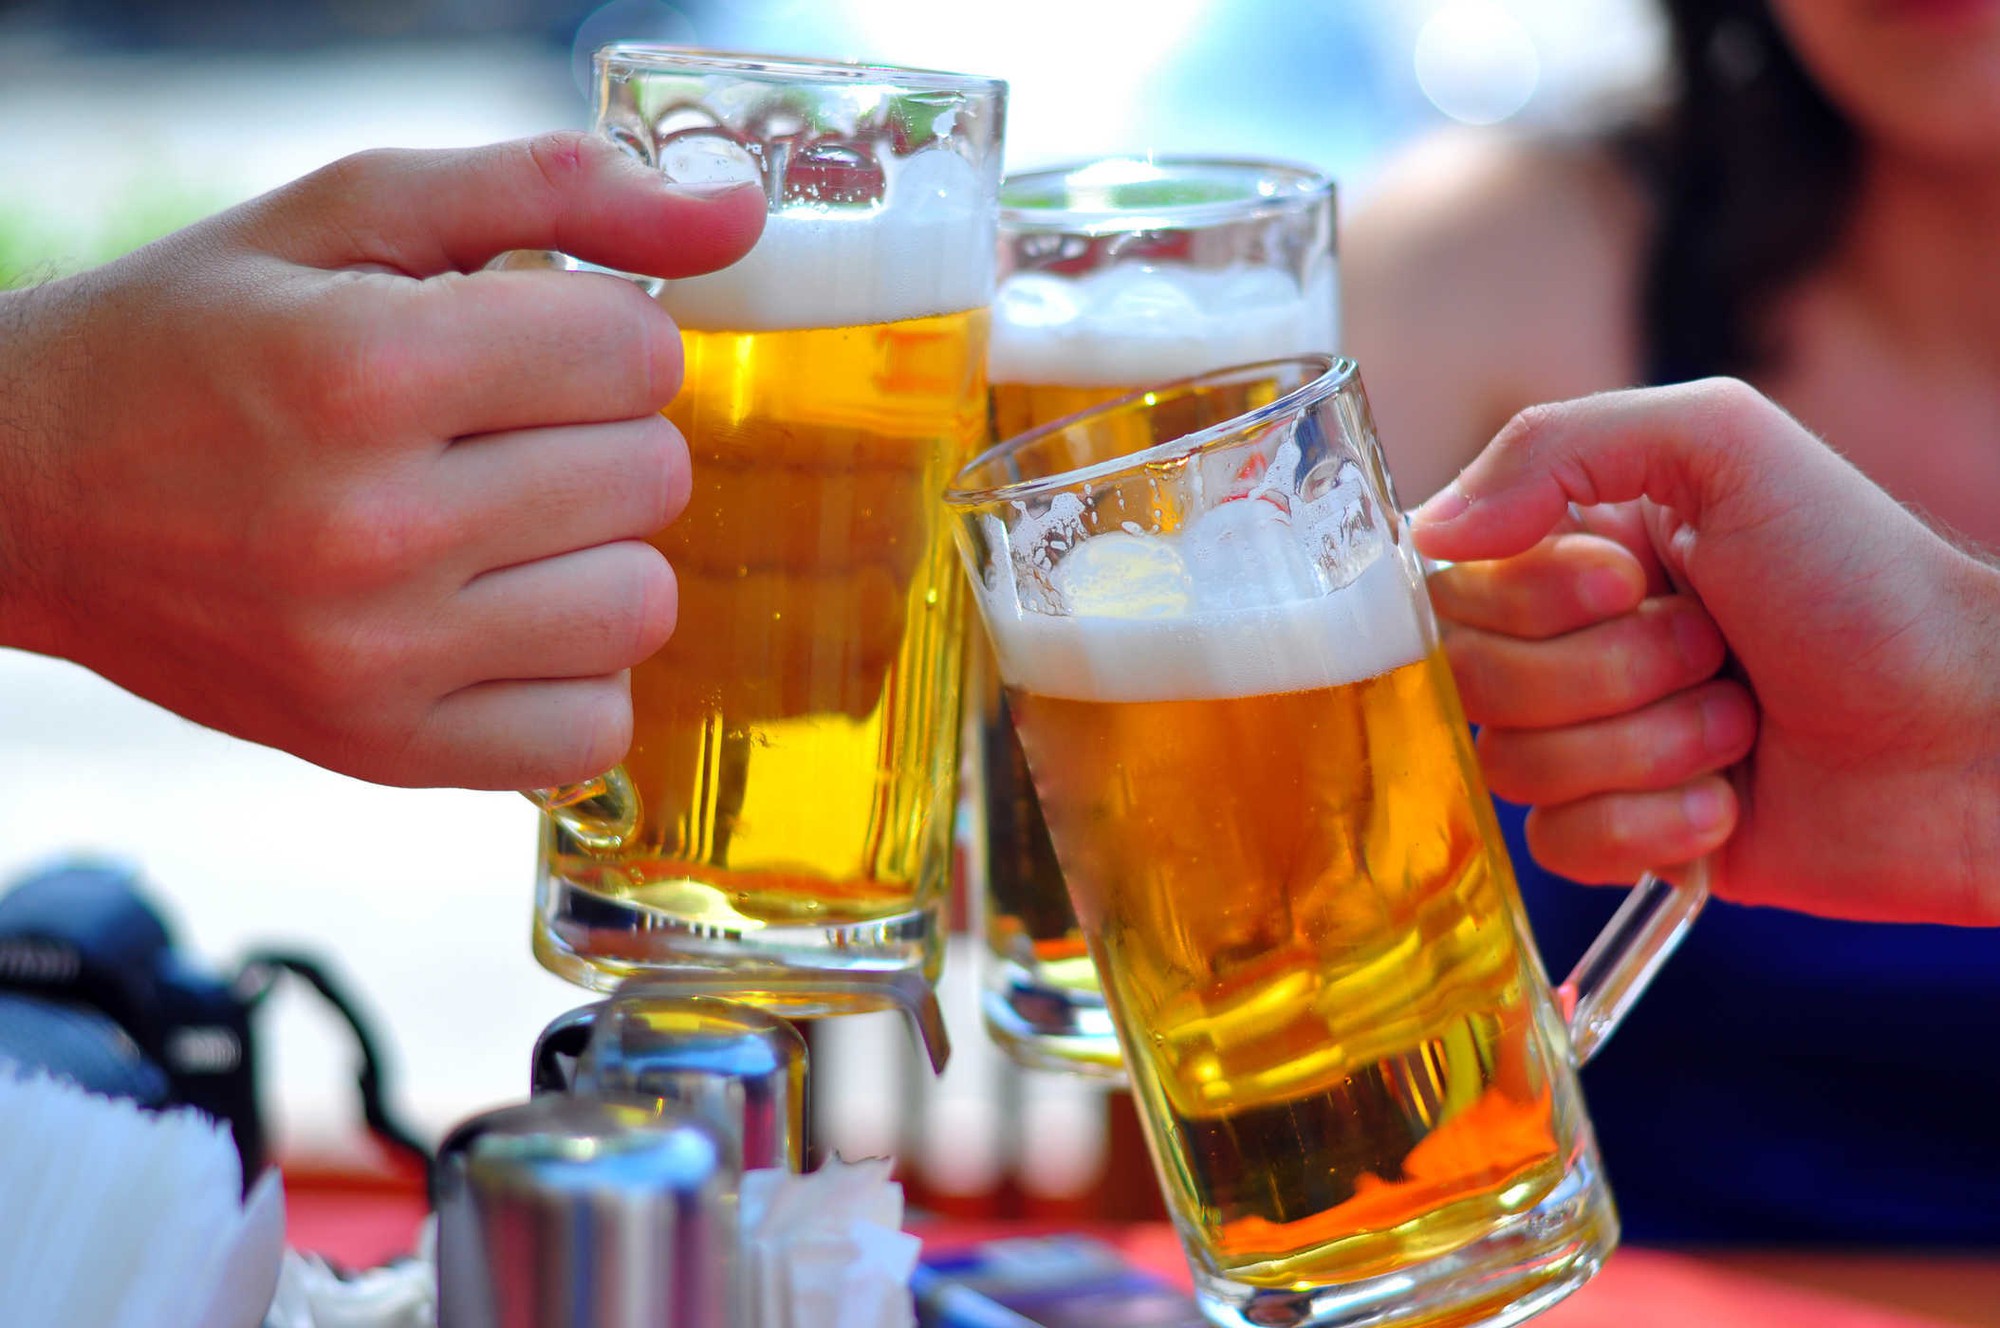 Nghị định 24/2020/NĐ-CP bổ sung 3 địa điểm công cộng cấm uống rượu, bia